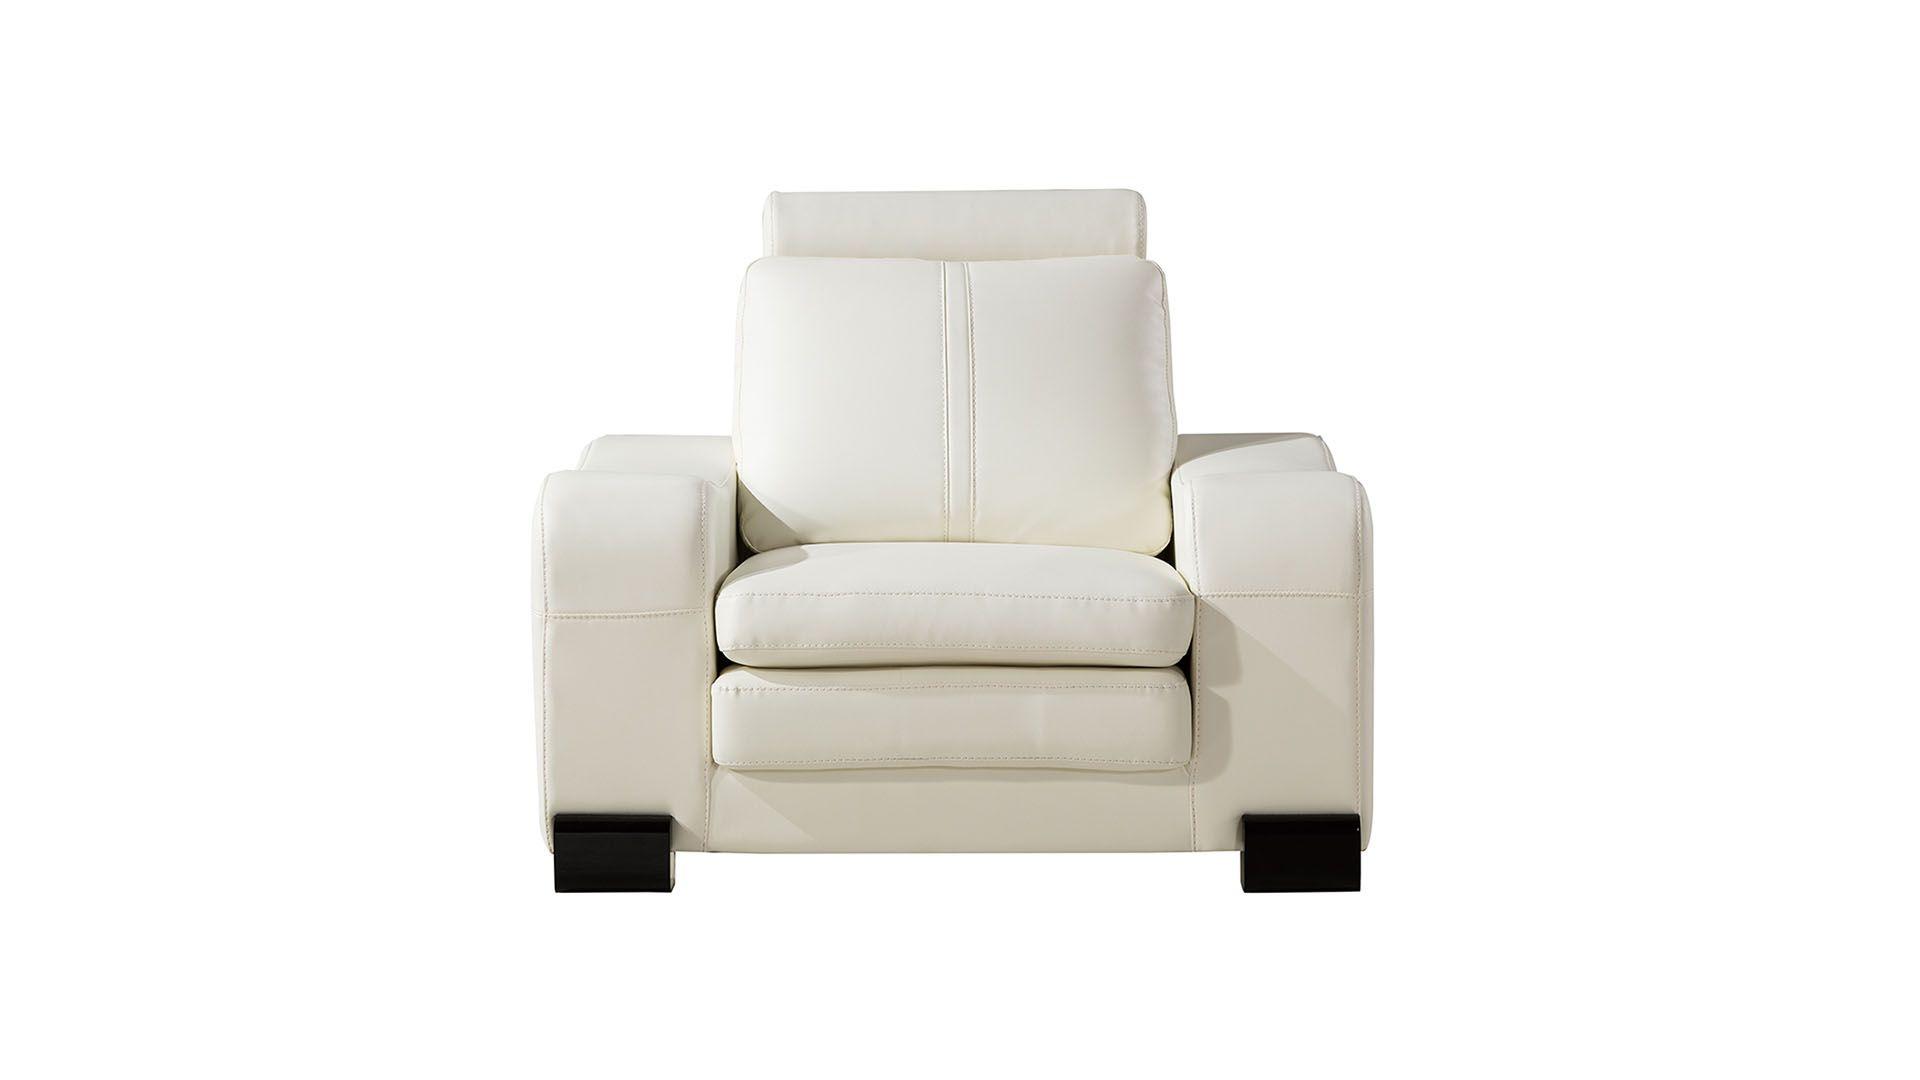 

    
AE210-IV -6PC American Eagle Furniture Sofa Set
